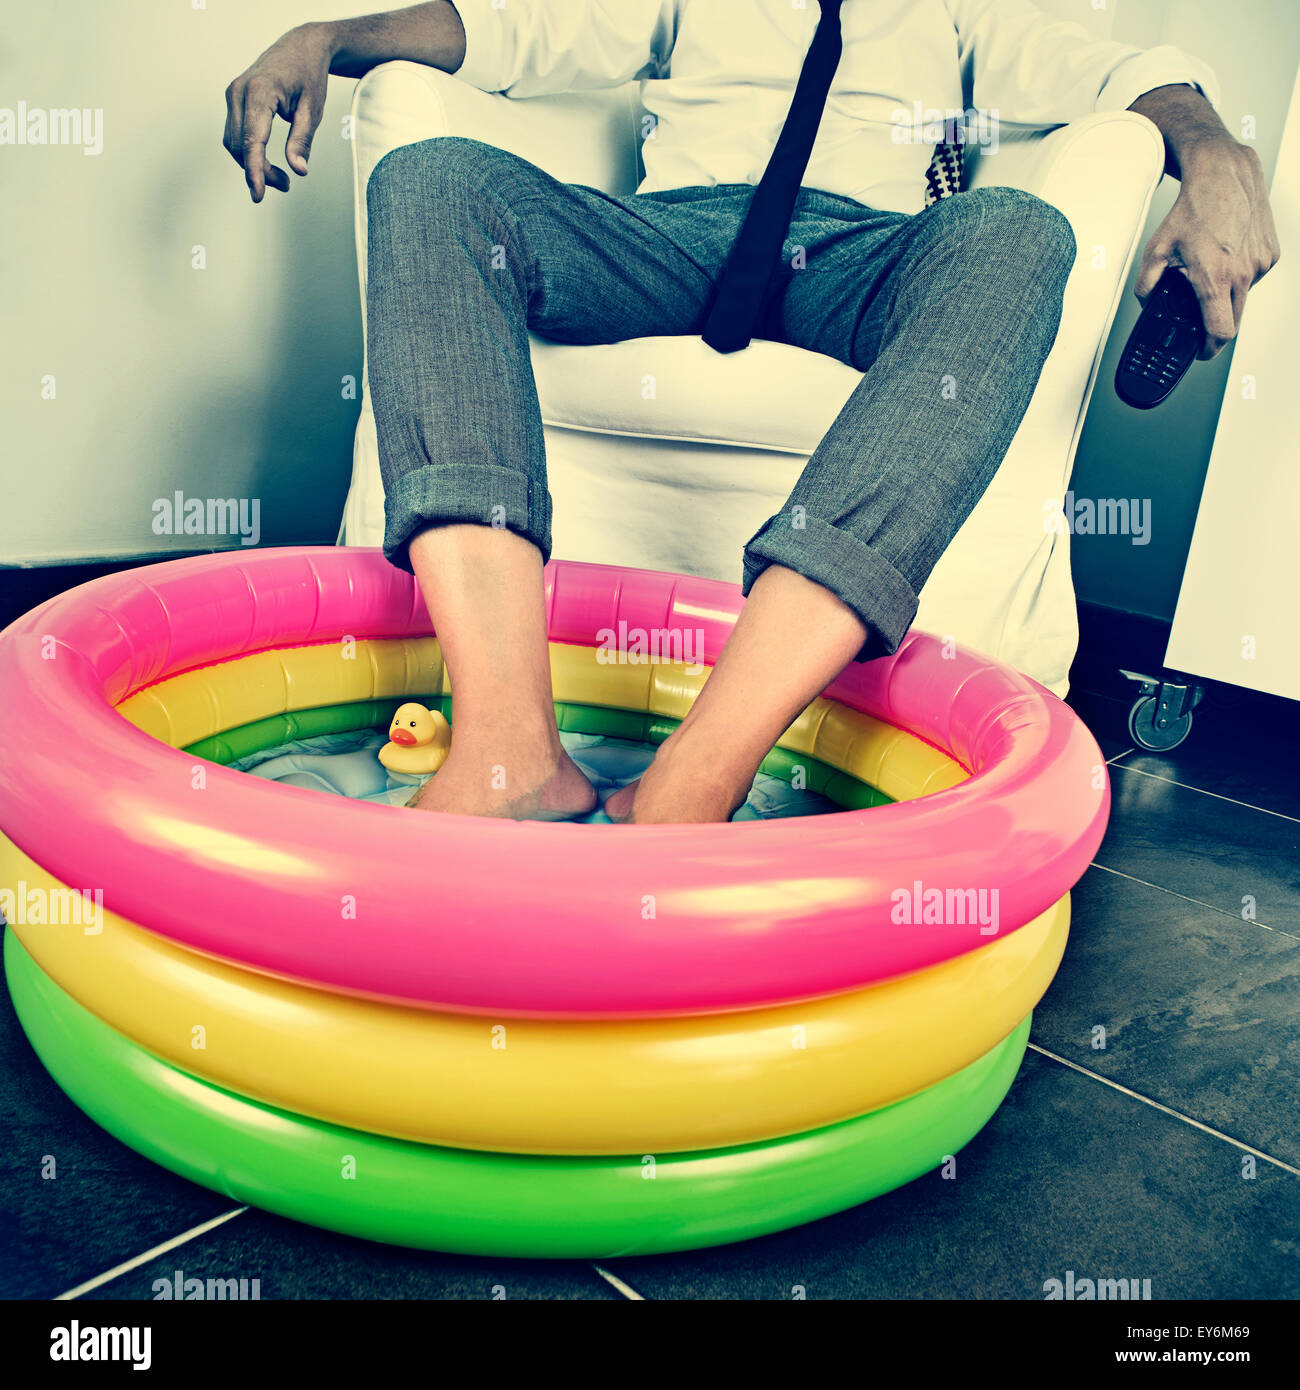 Un jeune homme en fonction de ses pieds tremper dans l'eau d'une piscine gonflable à l'intérieur, avec un effet dramatique, illustrant le concept de stayi Banque D'Images